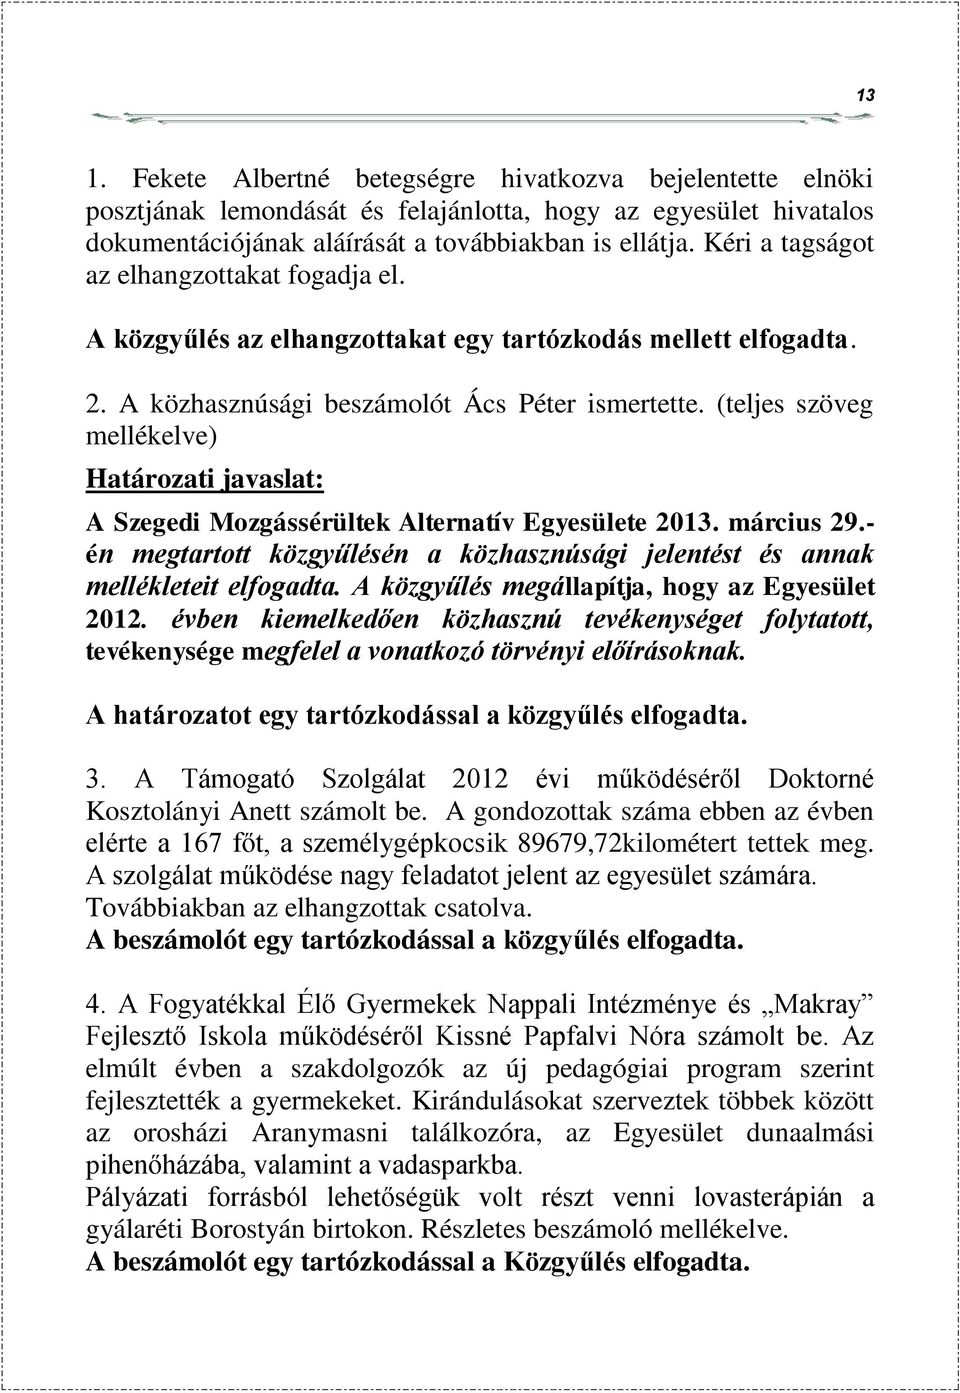 (teljes szöveg mellékelve) Határozati javaslat: A Szegedi Mozgássérültek Alternatív Egyesülete 2013. március 29.- én megtartott közgyűlésén a közhasznúsági jelentést és annak mellékleteit elfogadta.